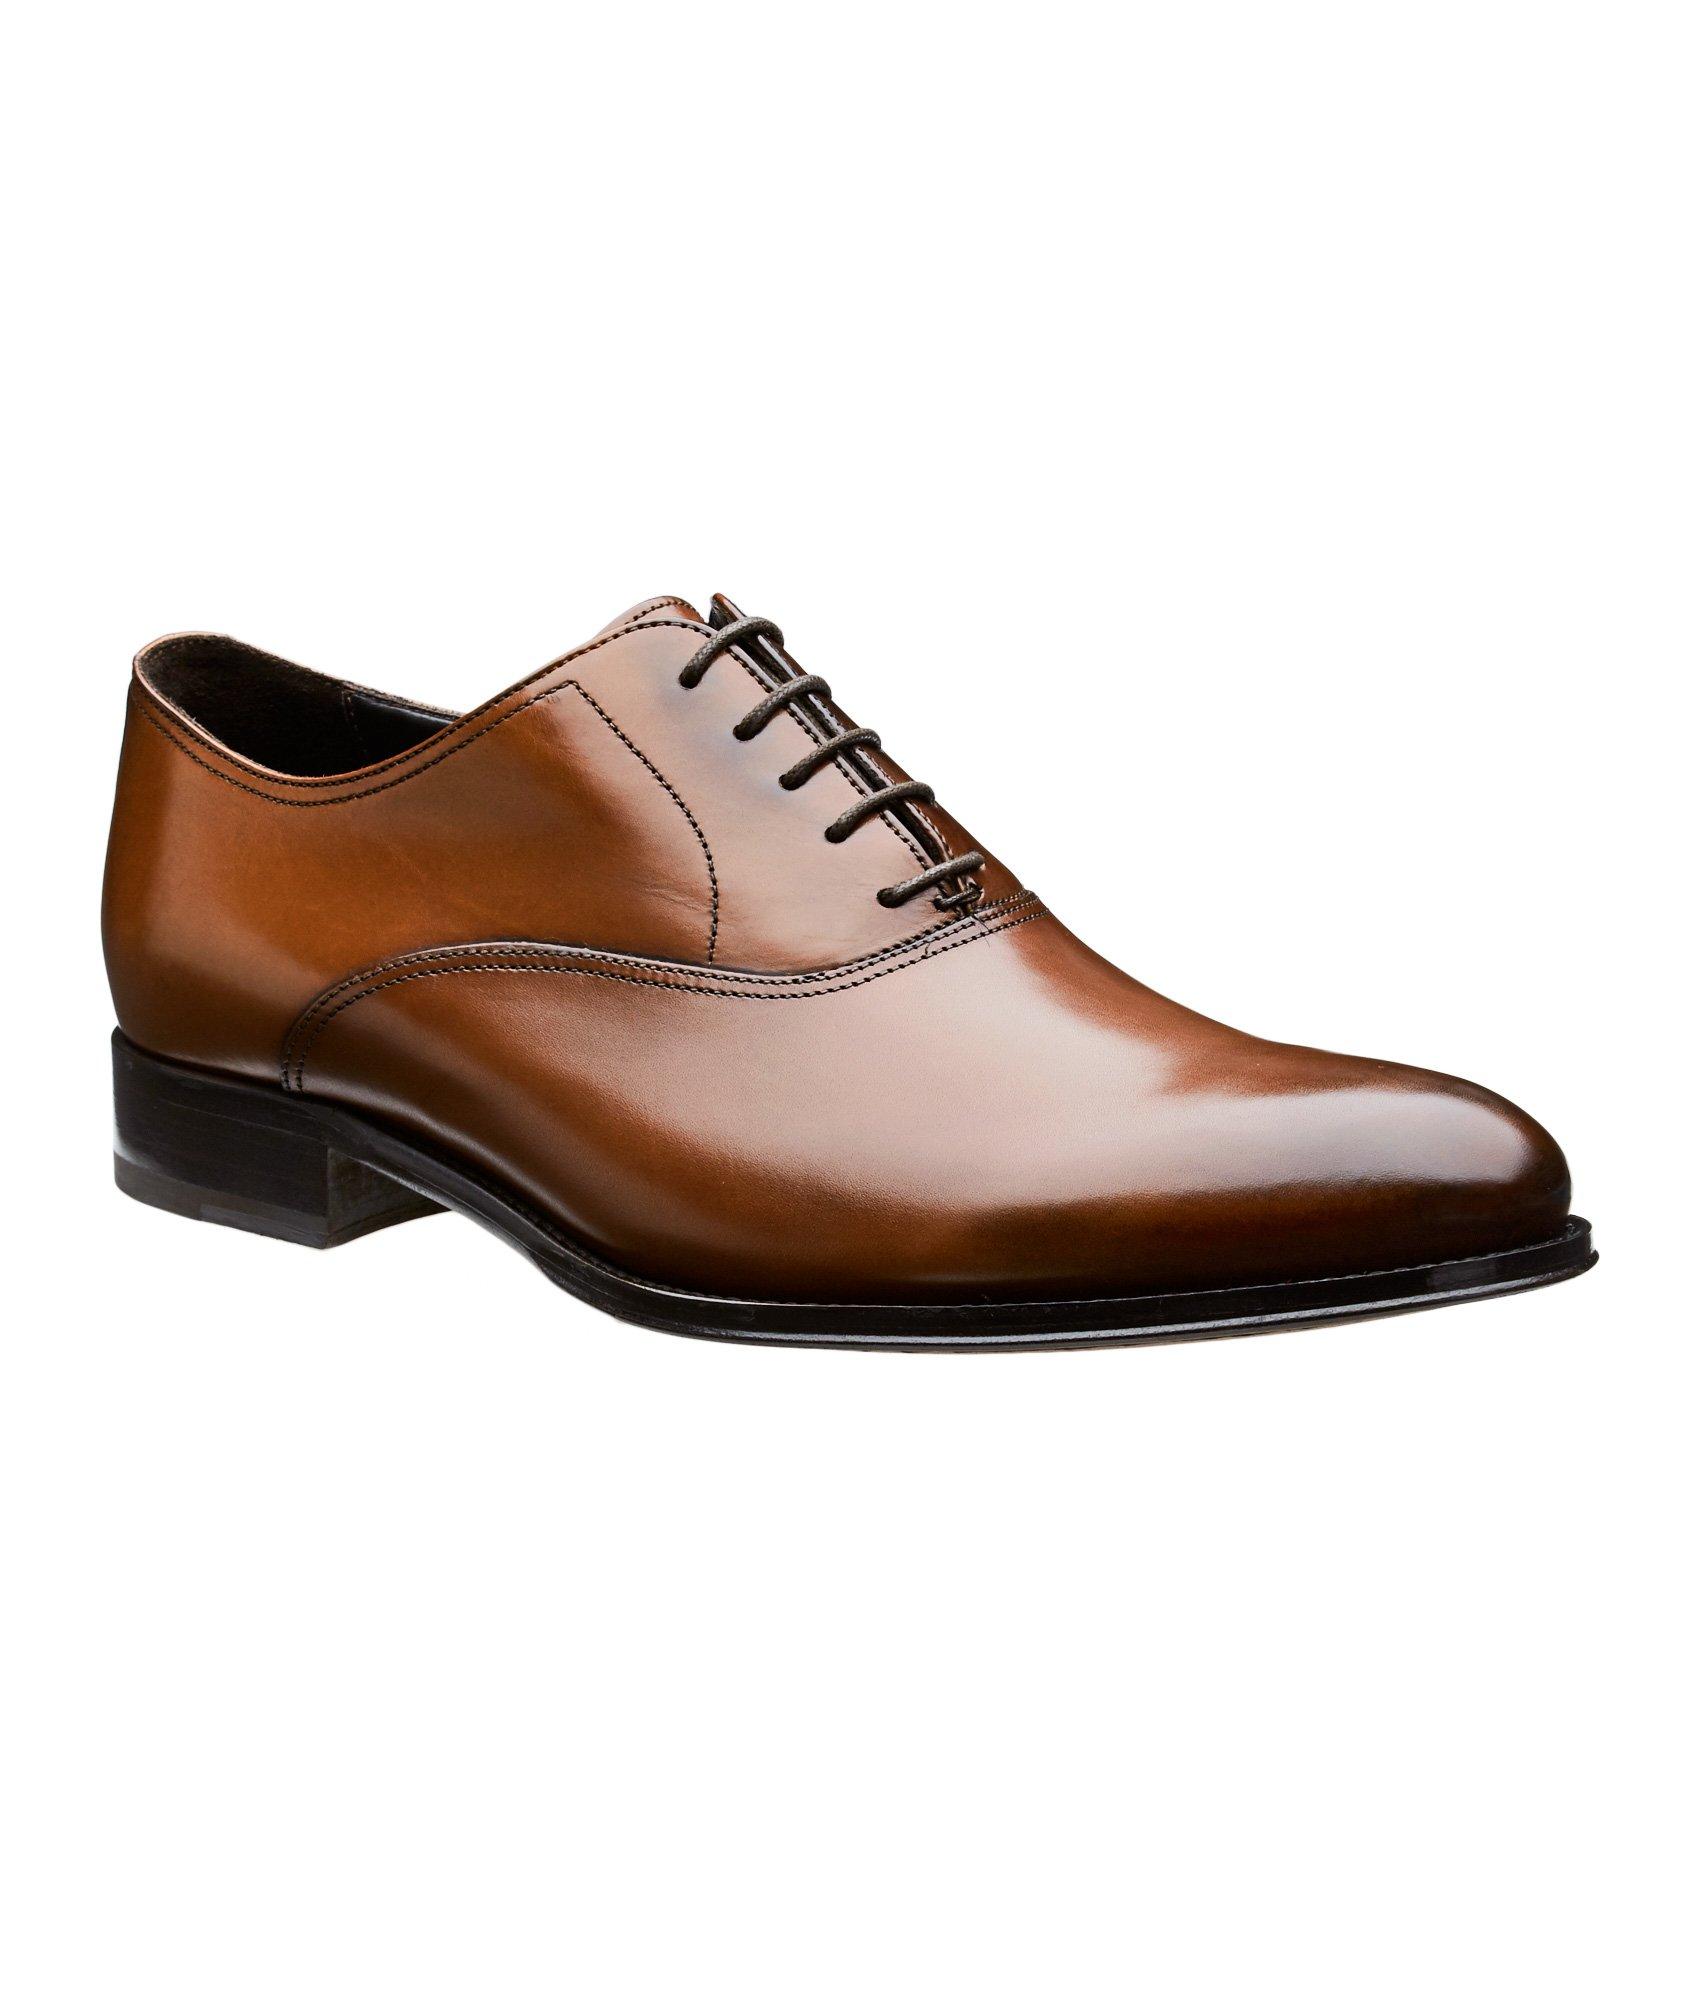 Chaussure lacée en cuir, modèle Langford image 0